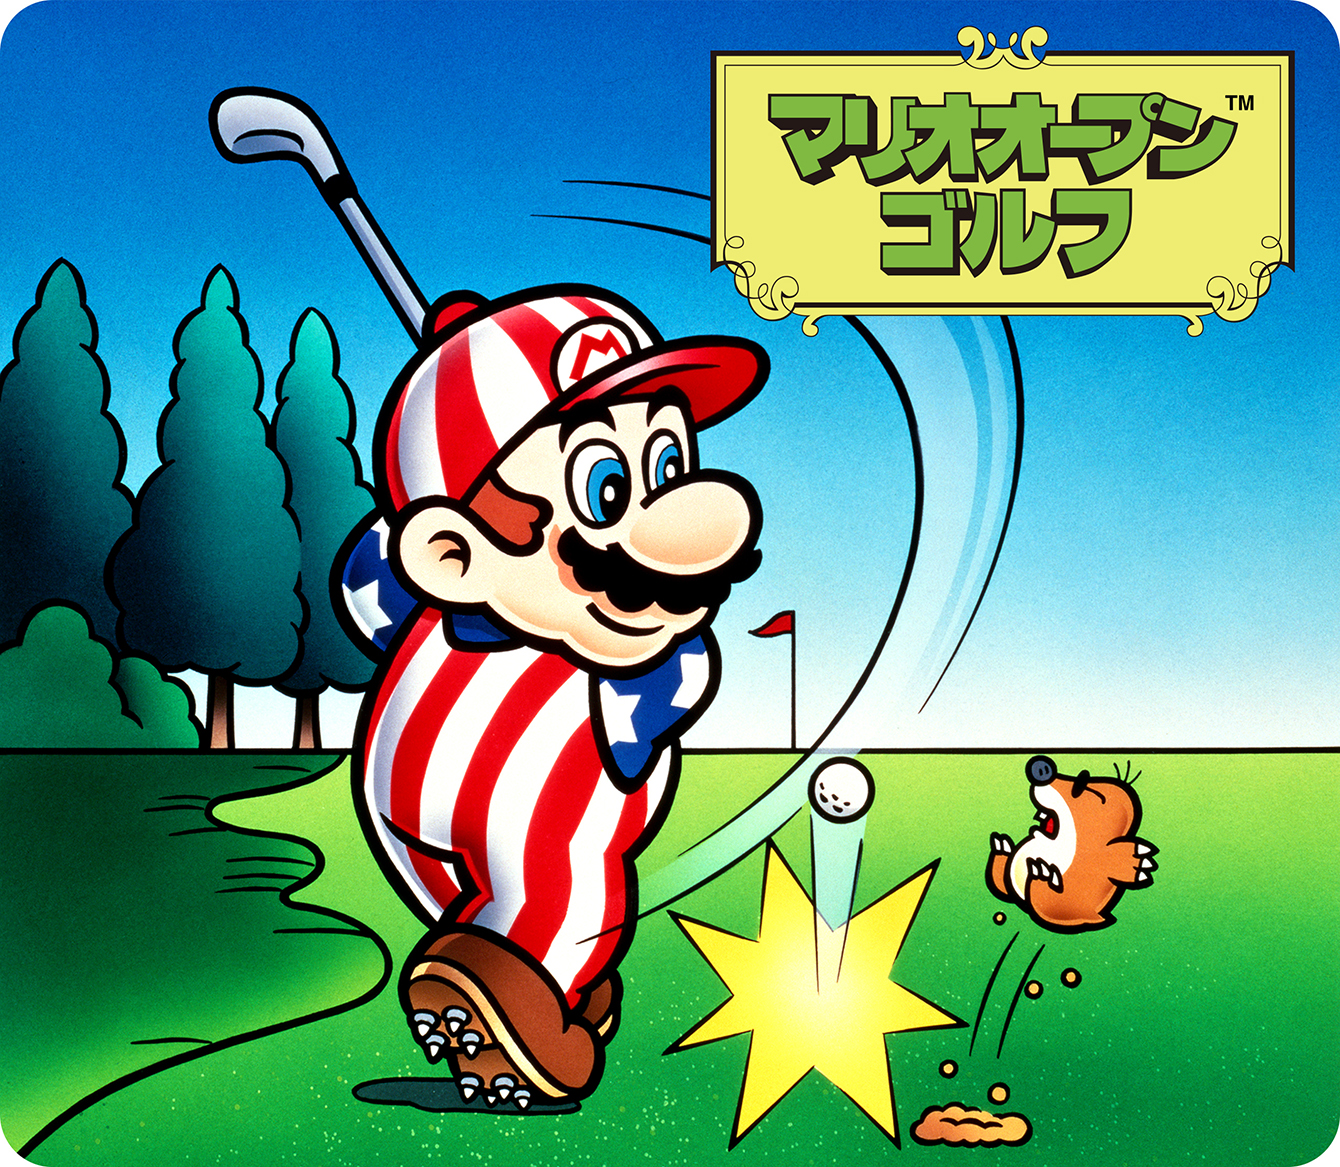 マリオオープンゴルフ | ゲームアーカイブ | マリオポータル | Nintendo